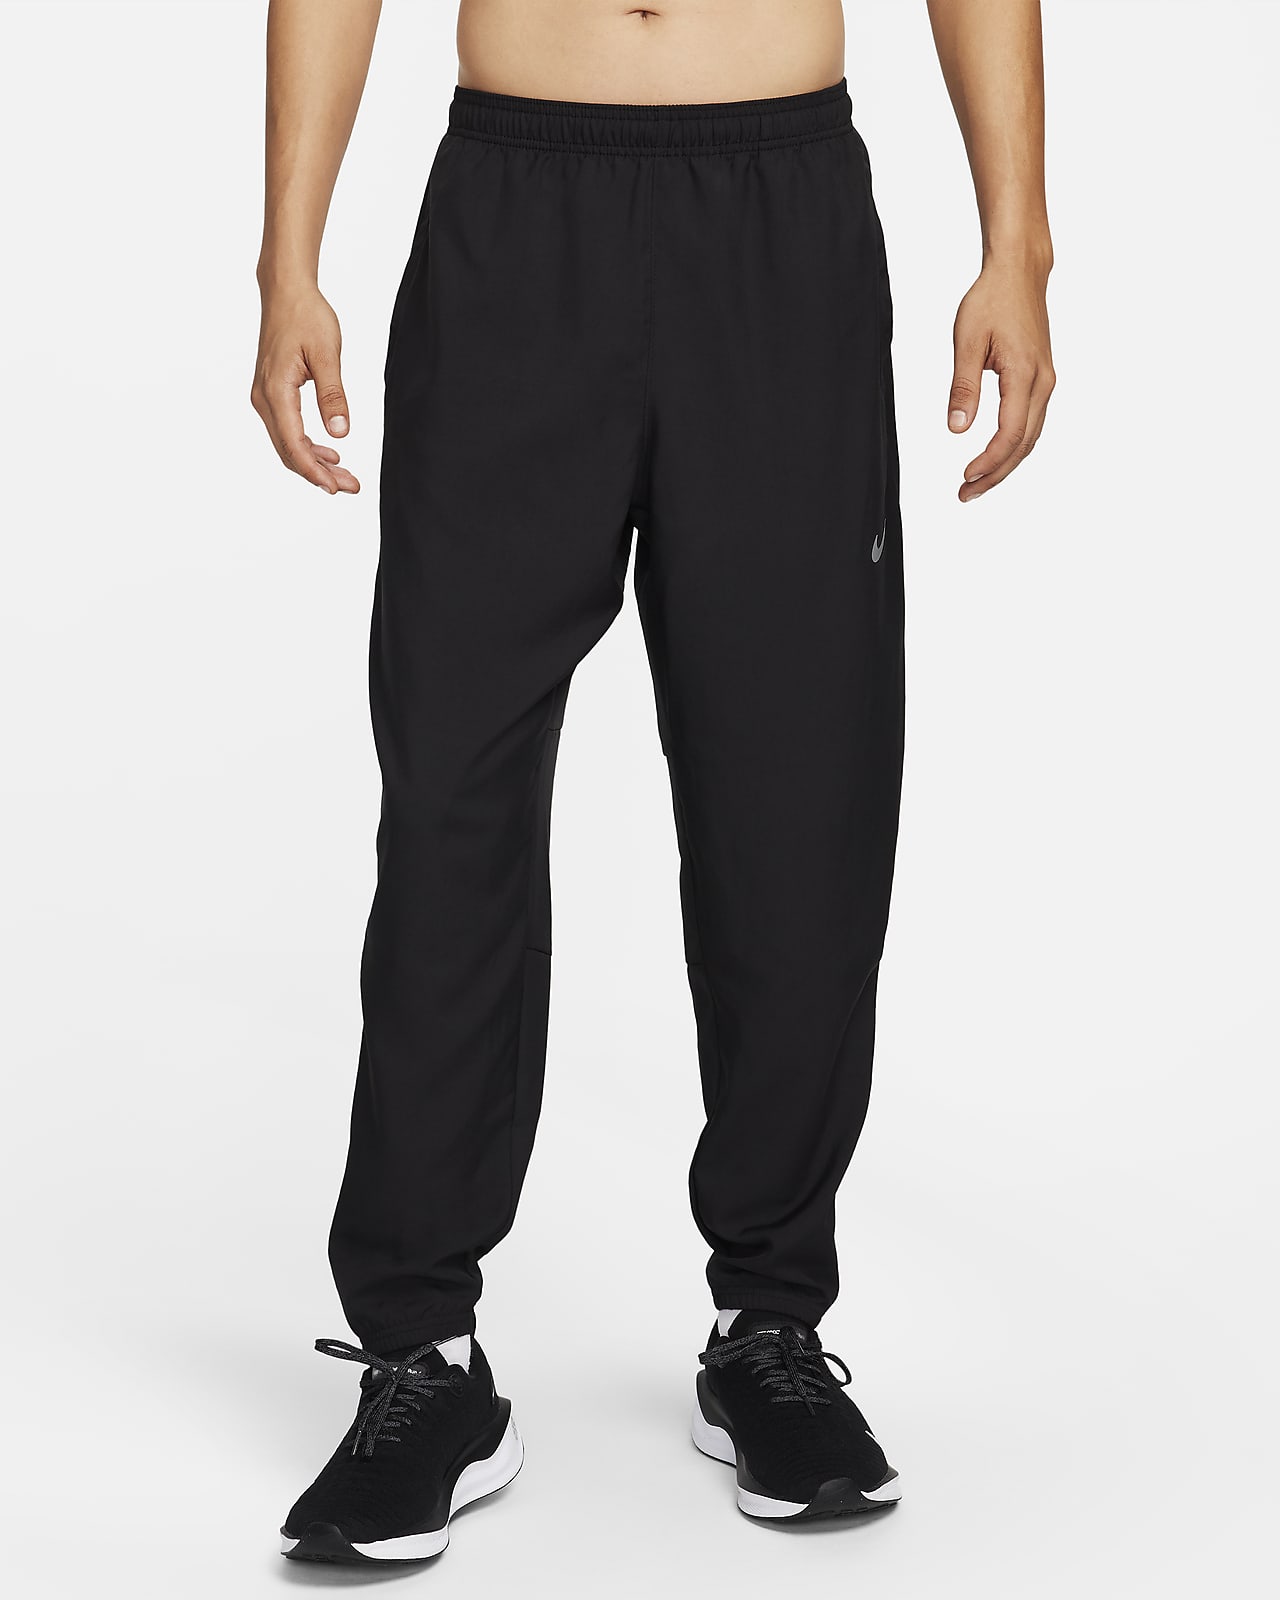 Pantalon de running tissé Dri-FIT Nike Challenger pour homme